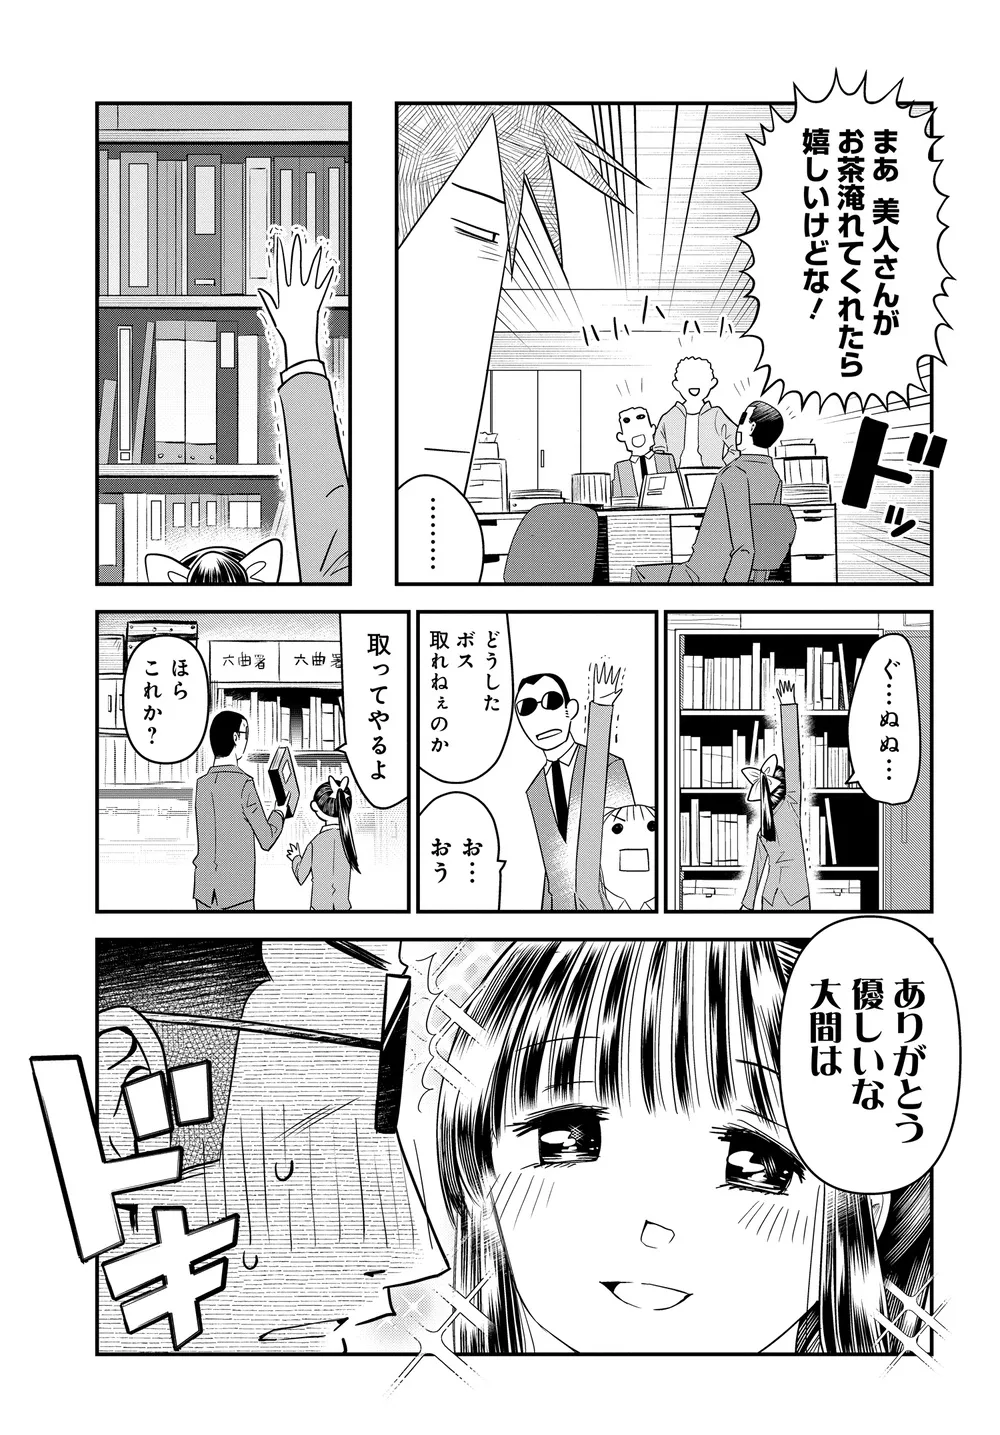 『美人すぎる女装刑事 藤堂さん』(30/39)